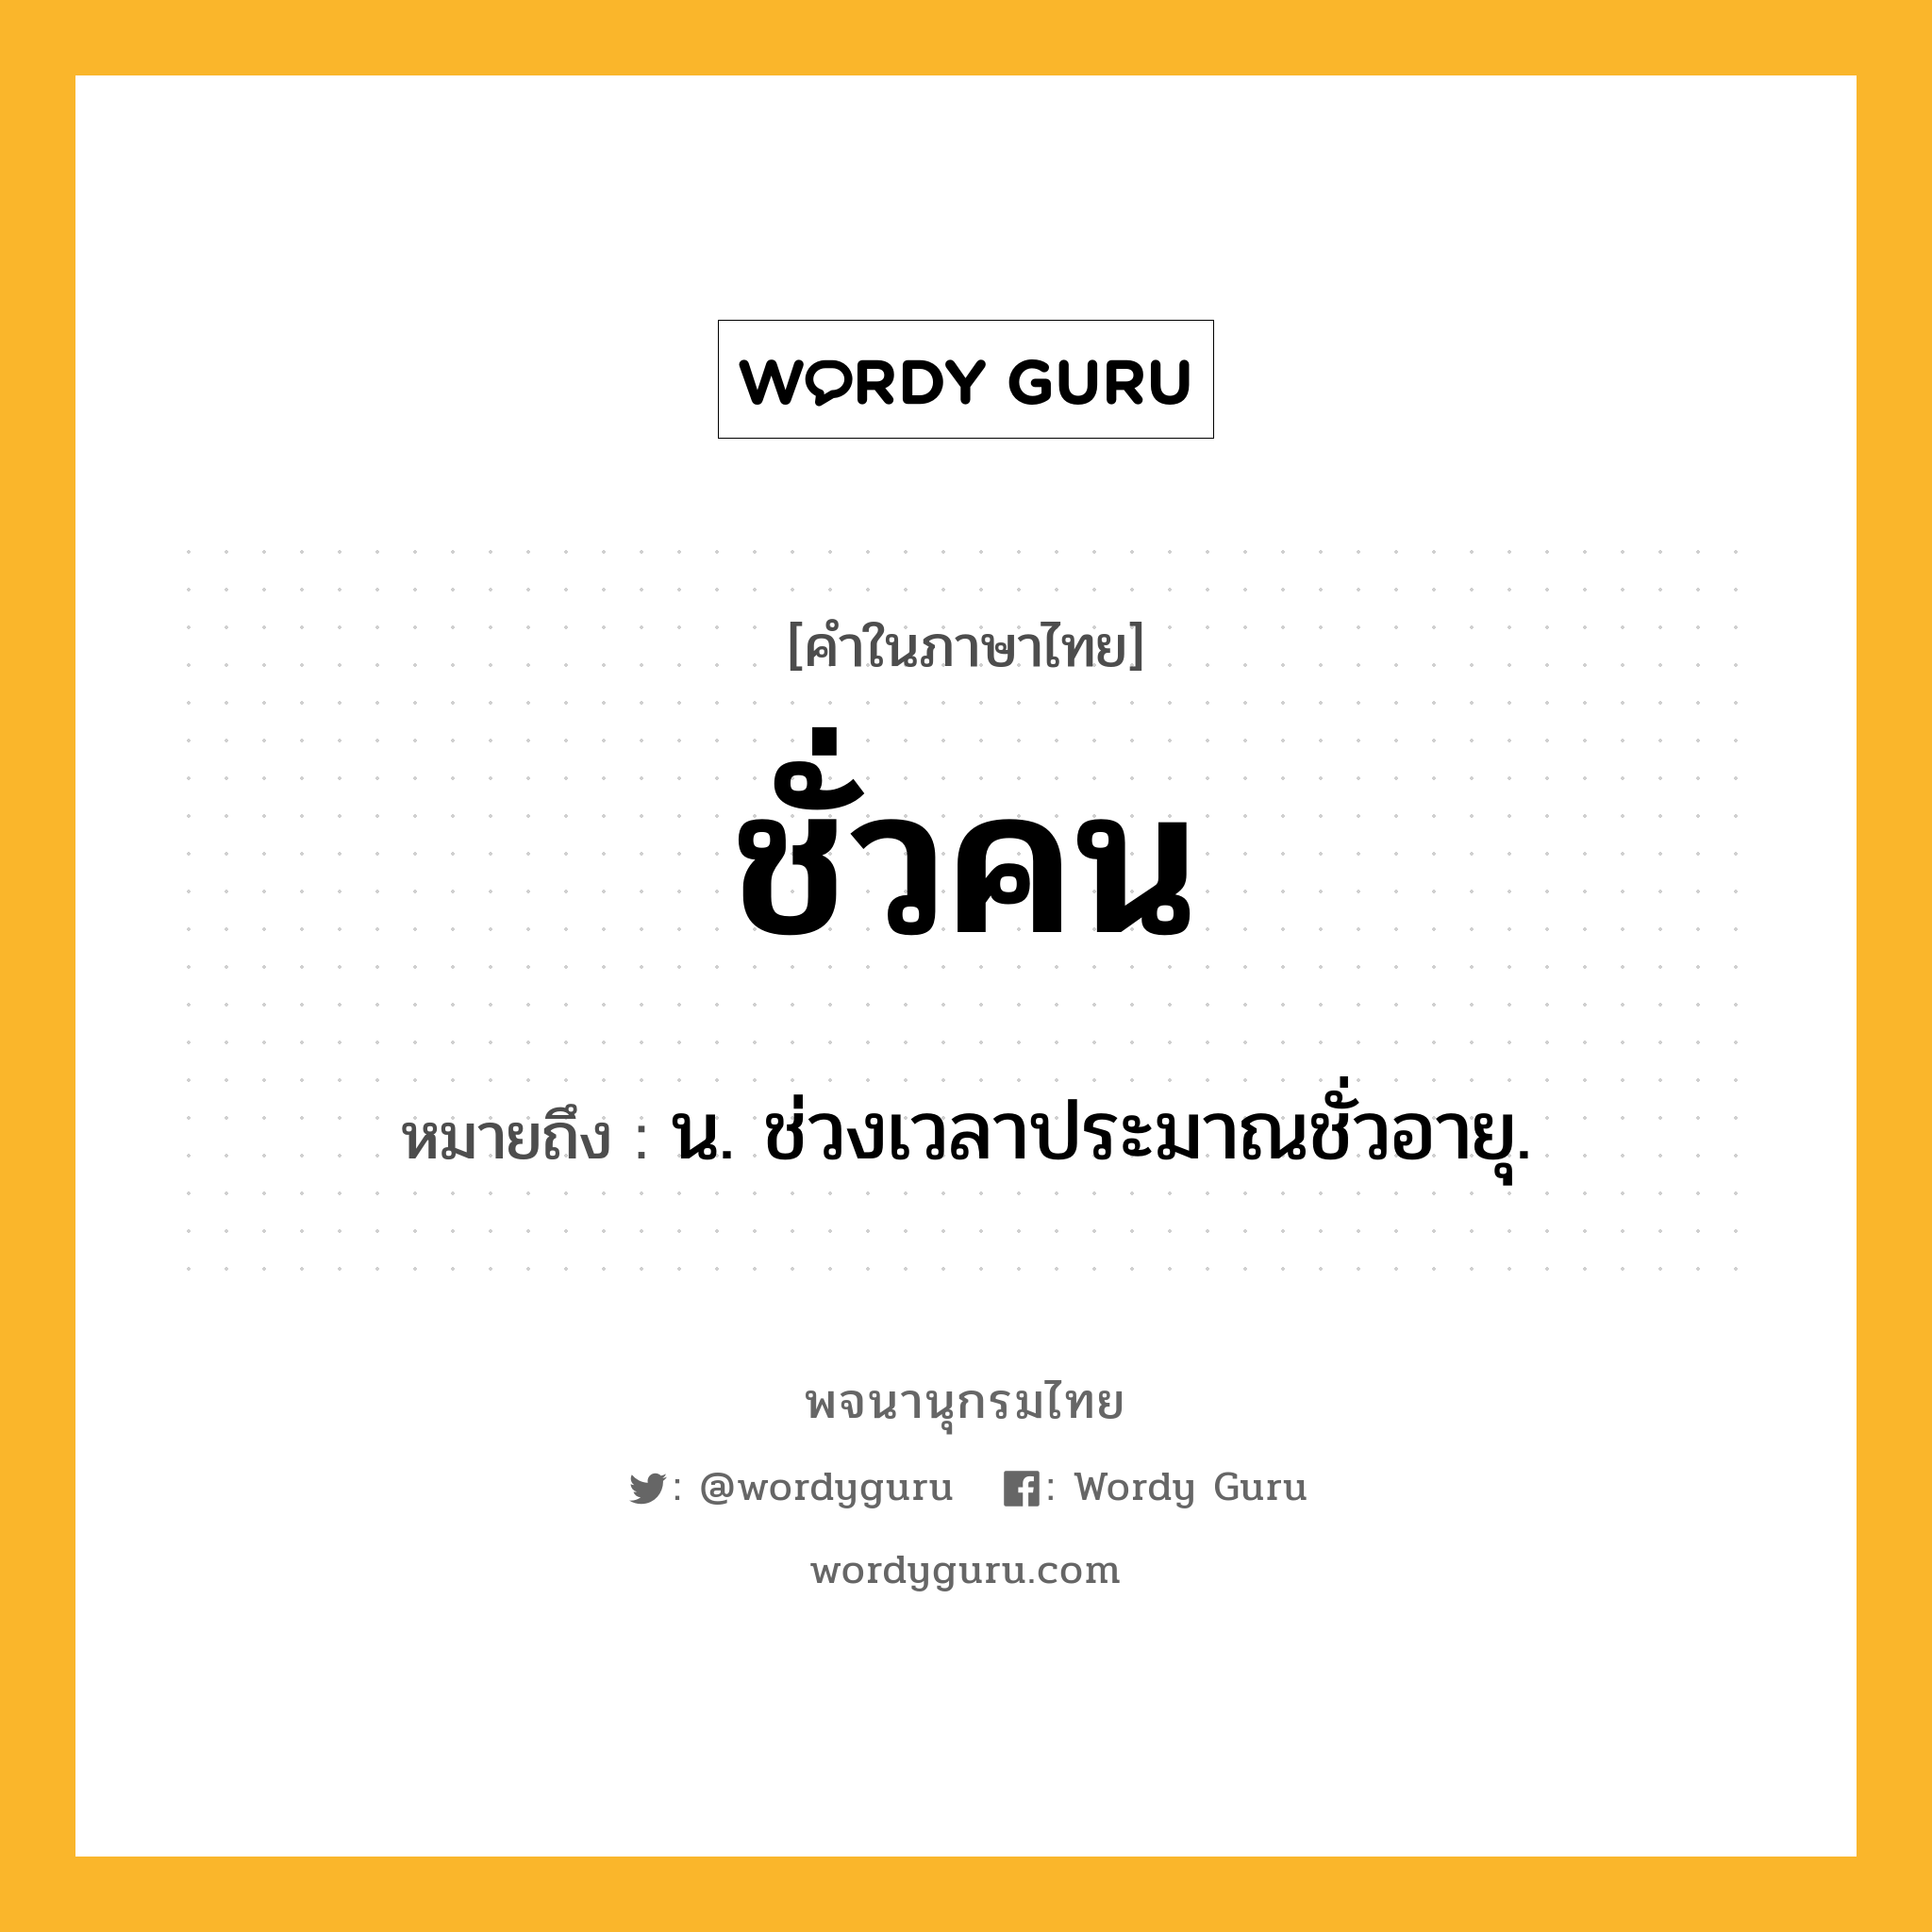 ชั่วคน หมายถึงอะไร?, คำในภาษาไทย ชั่วคน หมายถึง น. ช่วงเวลาประมาณชั่วอายุ.